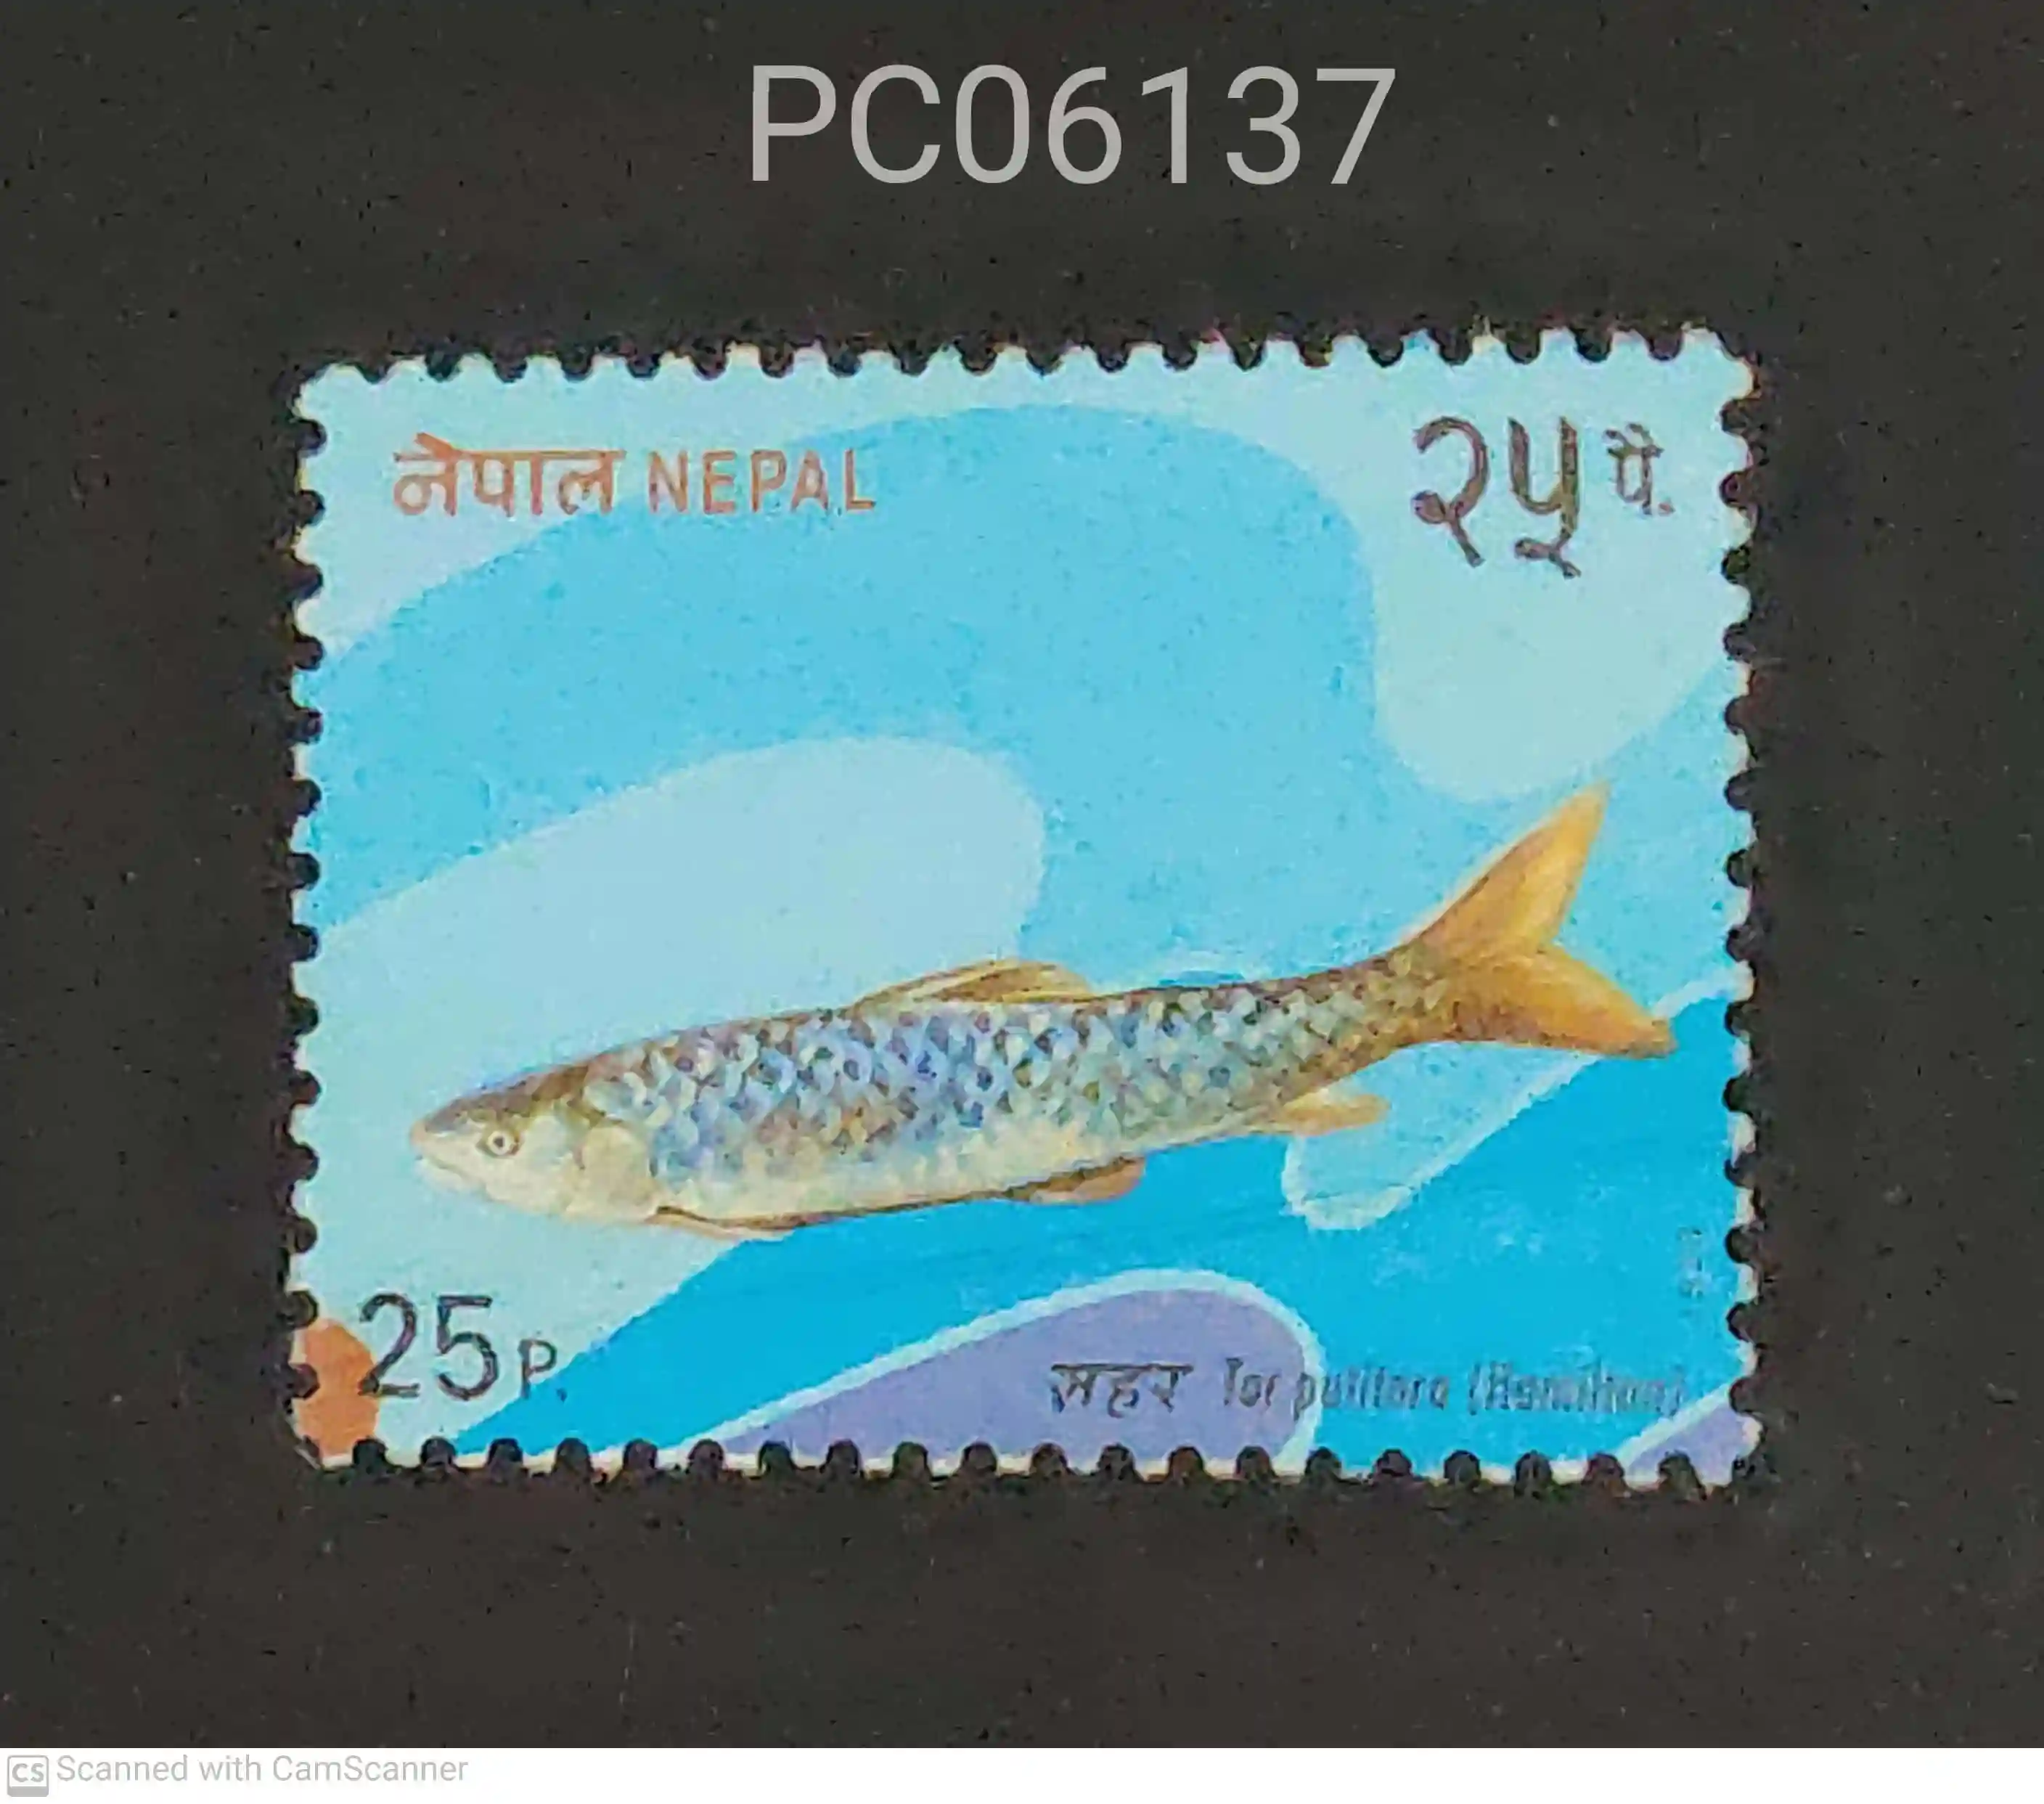 Nepal Tor putitora Fish Used PC06137